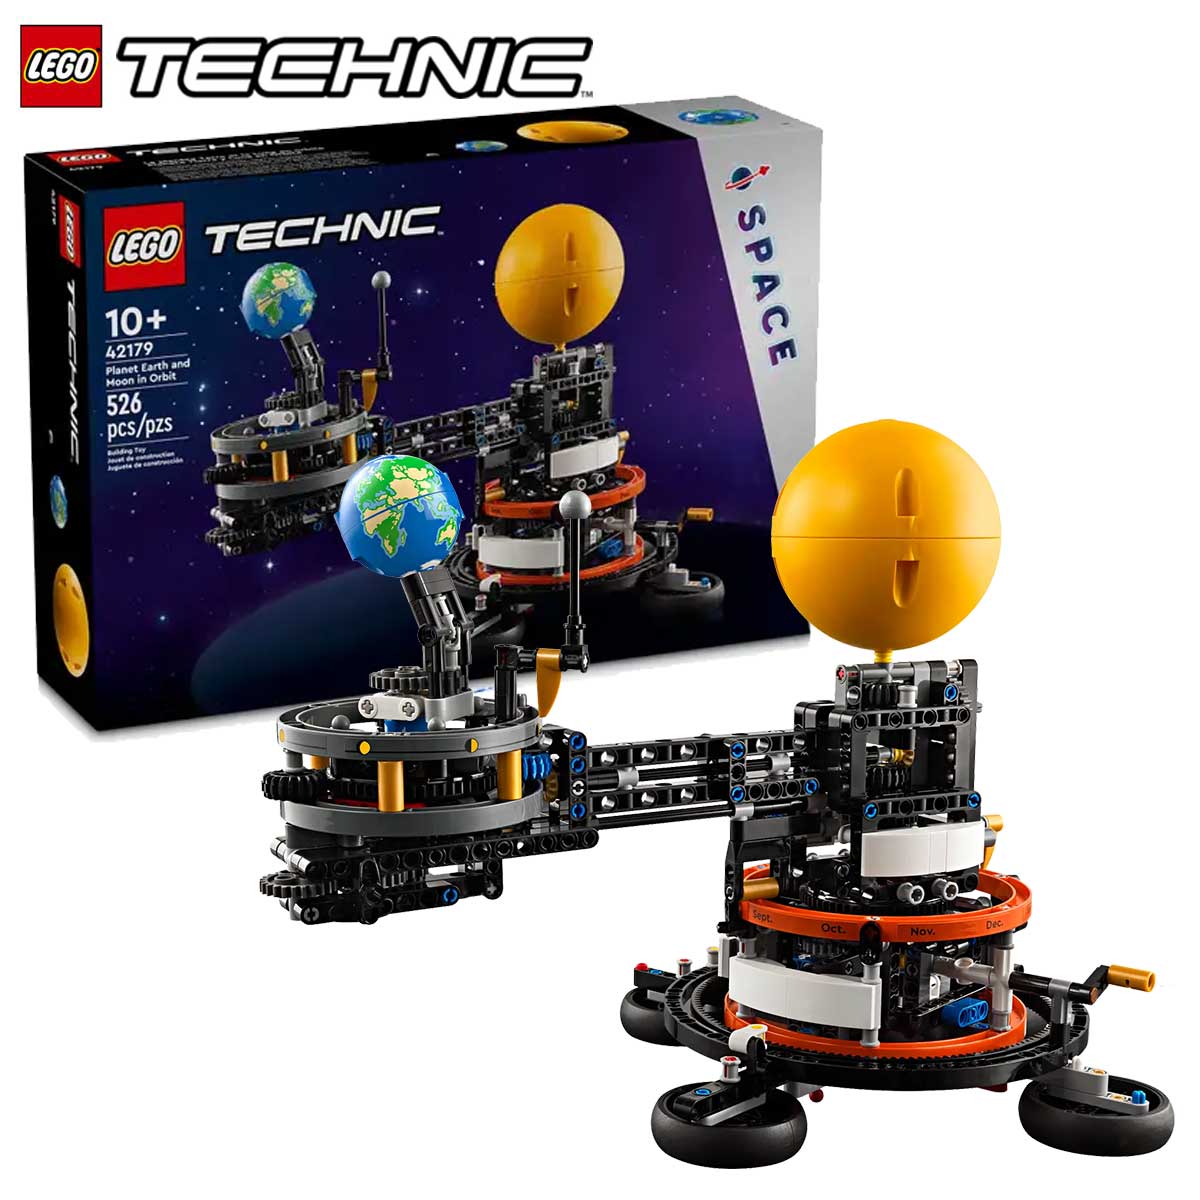 レゴ(LEGO) テクニック 地球と月の周回軌道 42179 おもちゃ 玩具 ブロック 男の子 大人 オトナレゴ ホビー プレゼント ギフト 誕生日 クリスマス 宇宙 スペース インテリア ディスプレイ